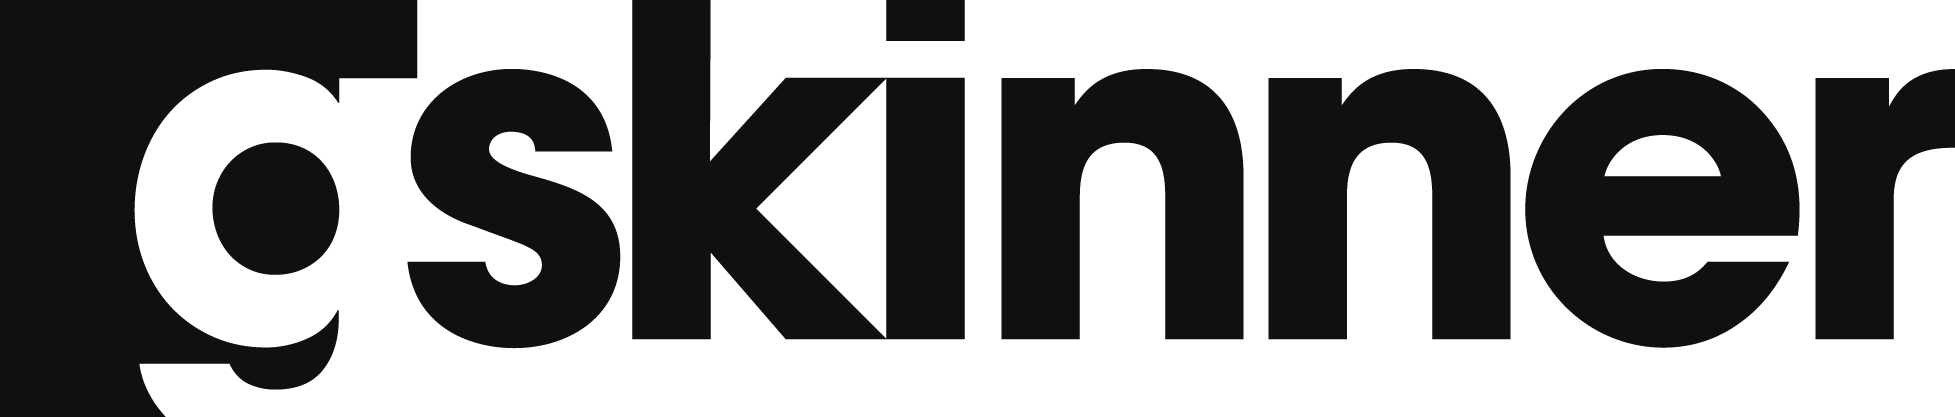 Gskinner Blog - Sirius Xm Logo Svg (1955x417), Png Download